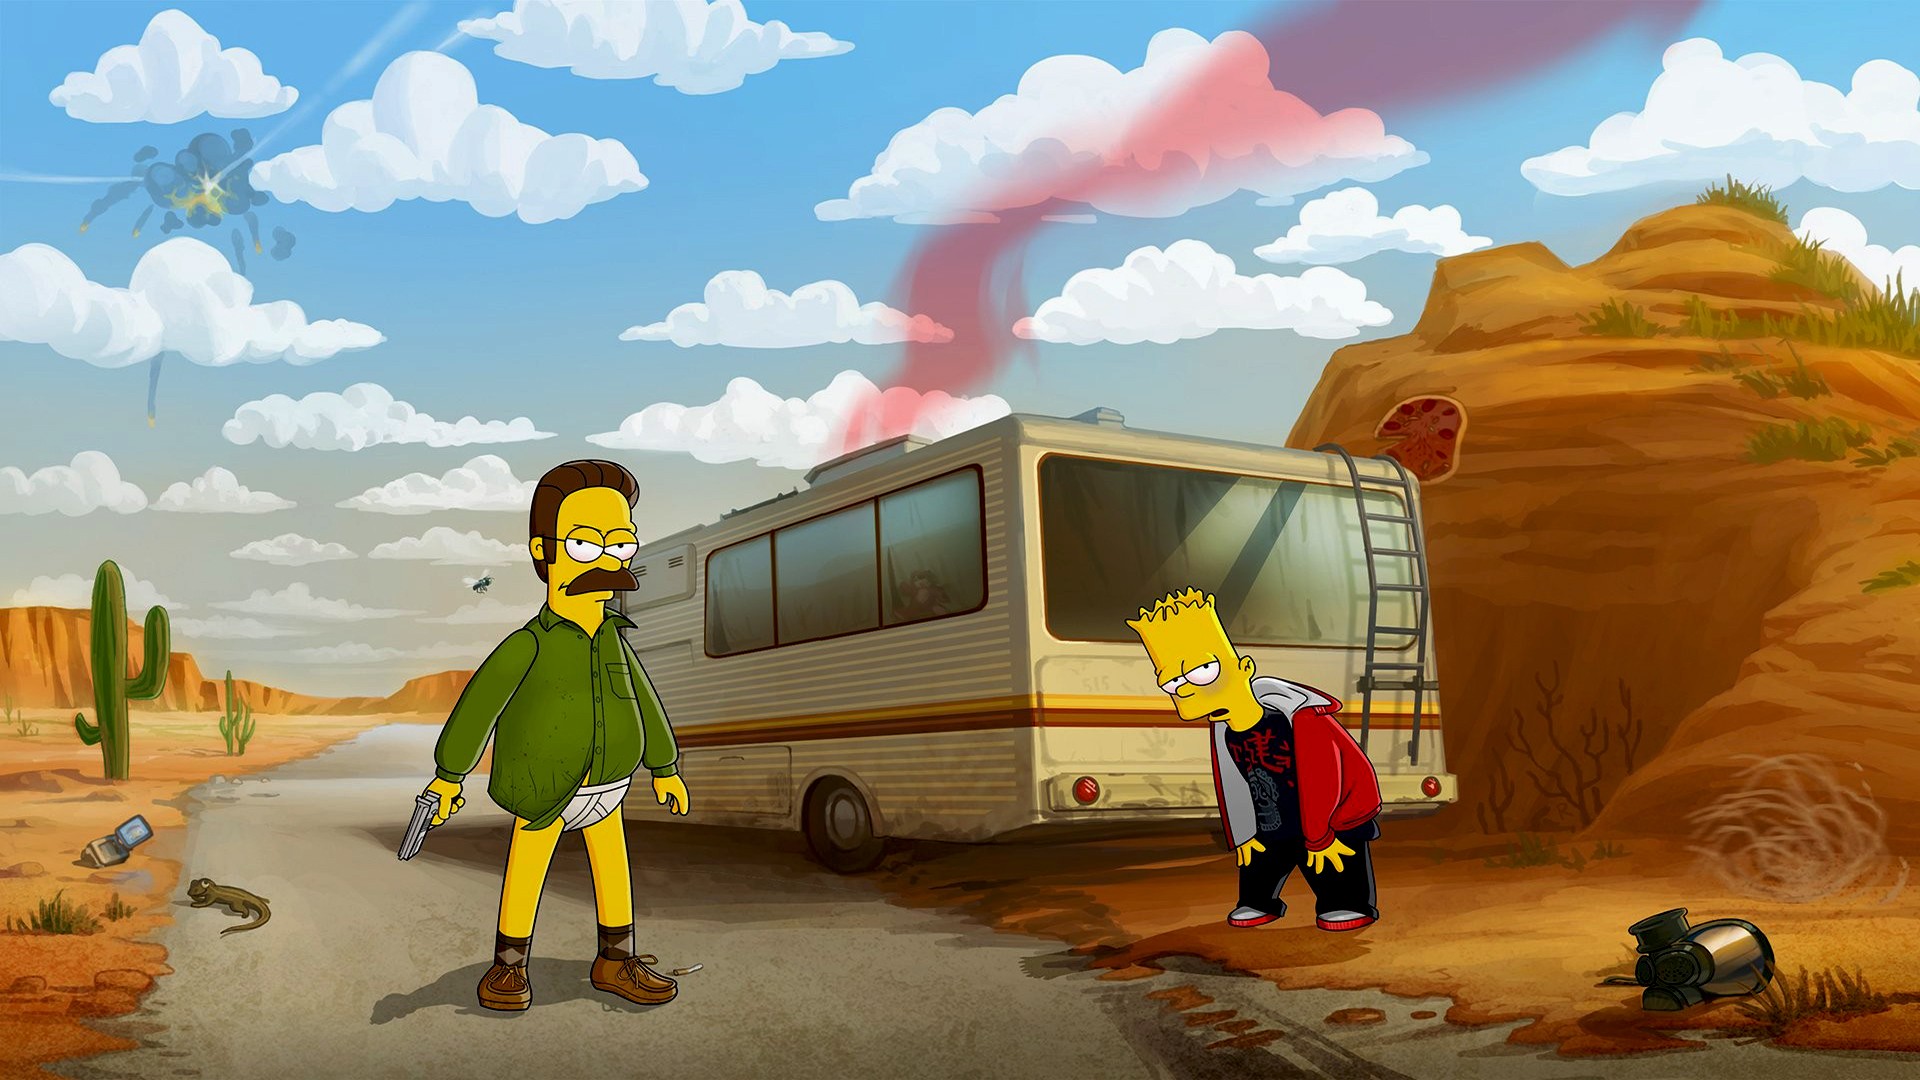 General 1920x1080 The Simpsons Breaking Bad Ned Flanders Bart Simpson humor desert TV series